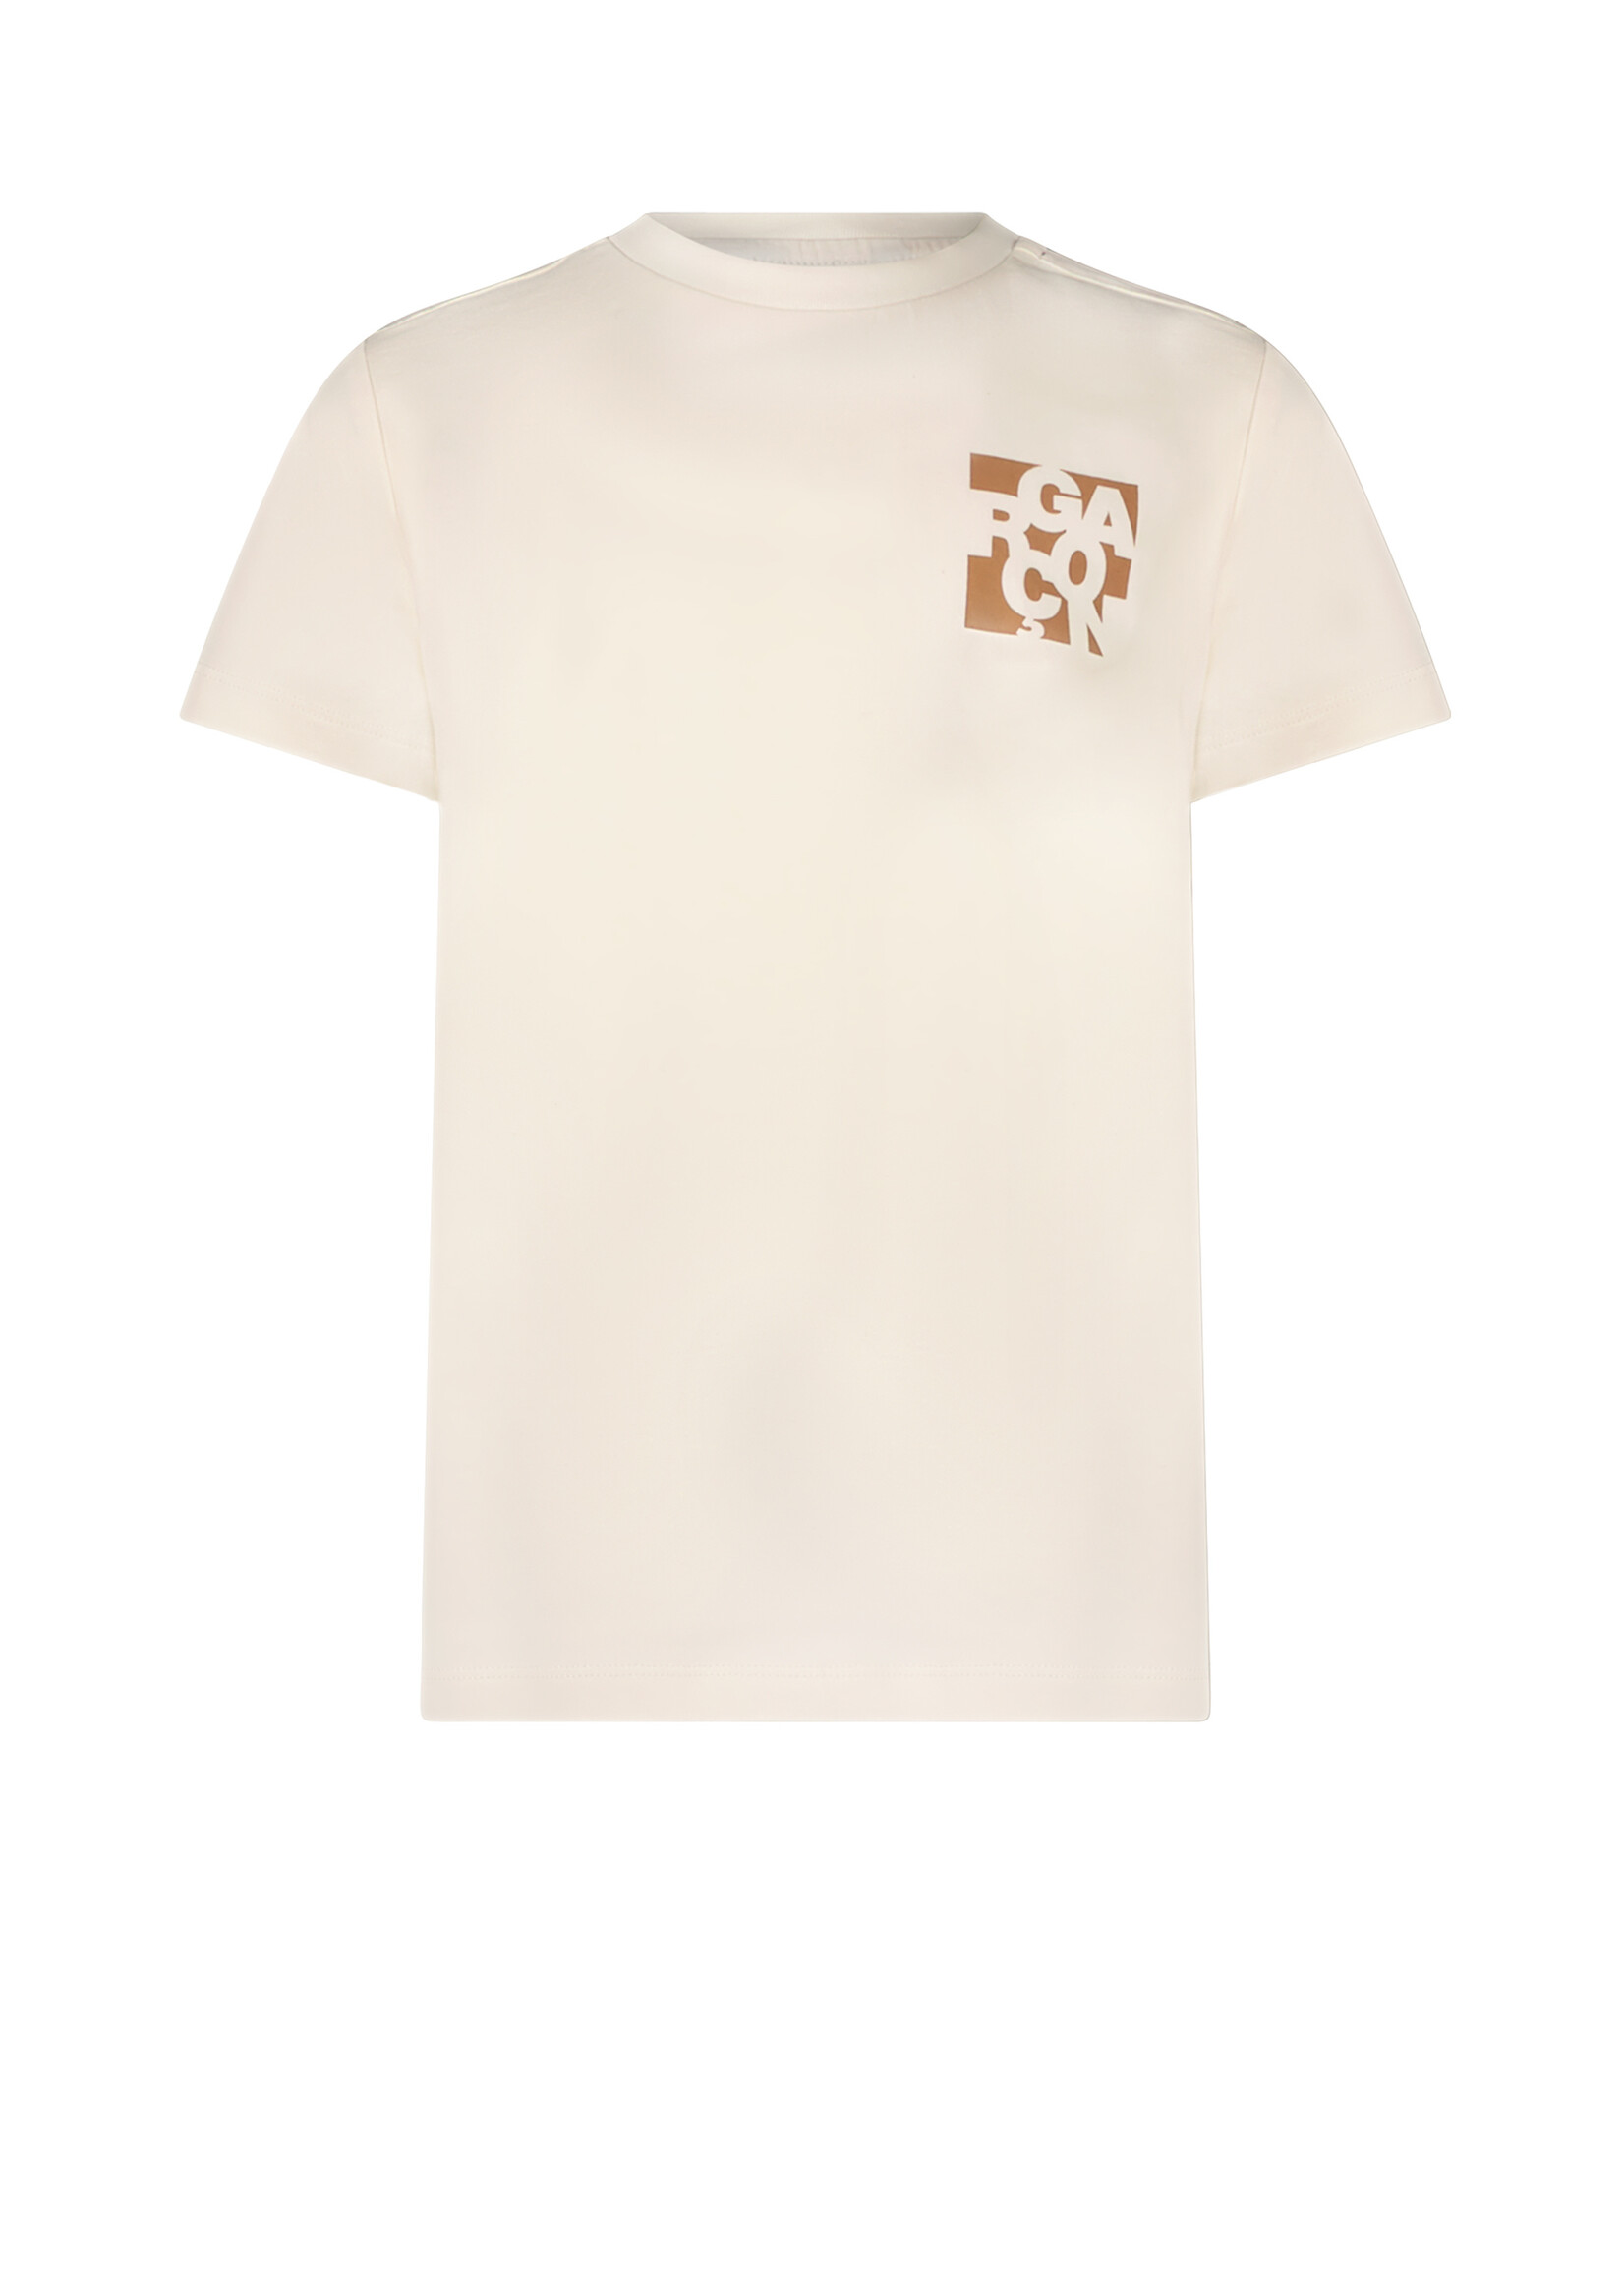 Le Chic Boys Kids L312-6401 NOLAN chest logo T-shirt Off White